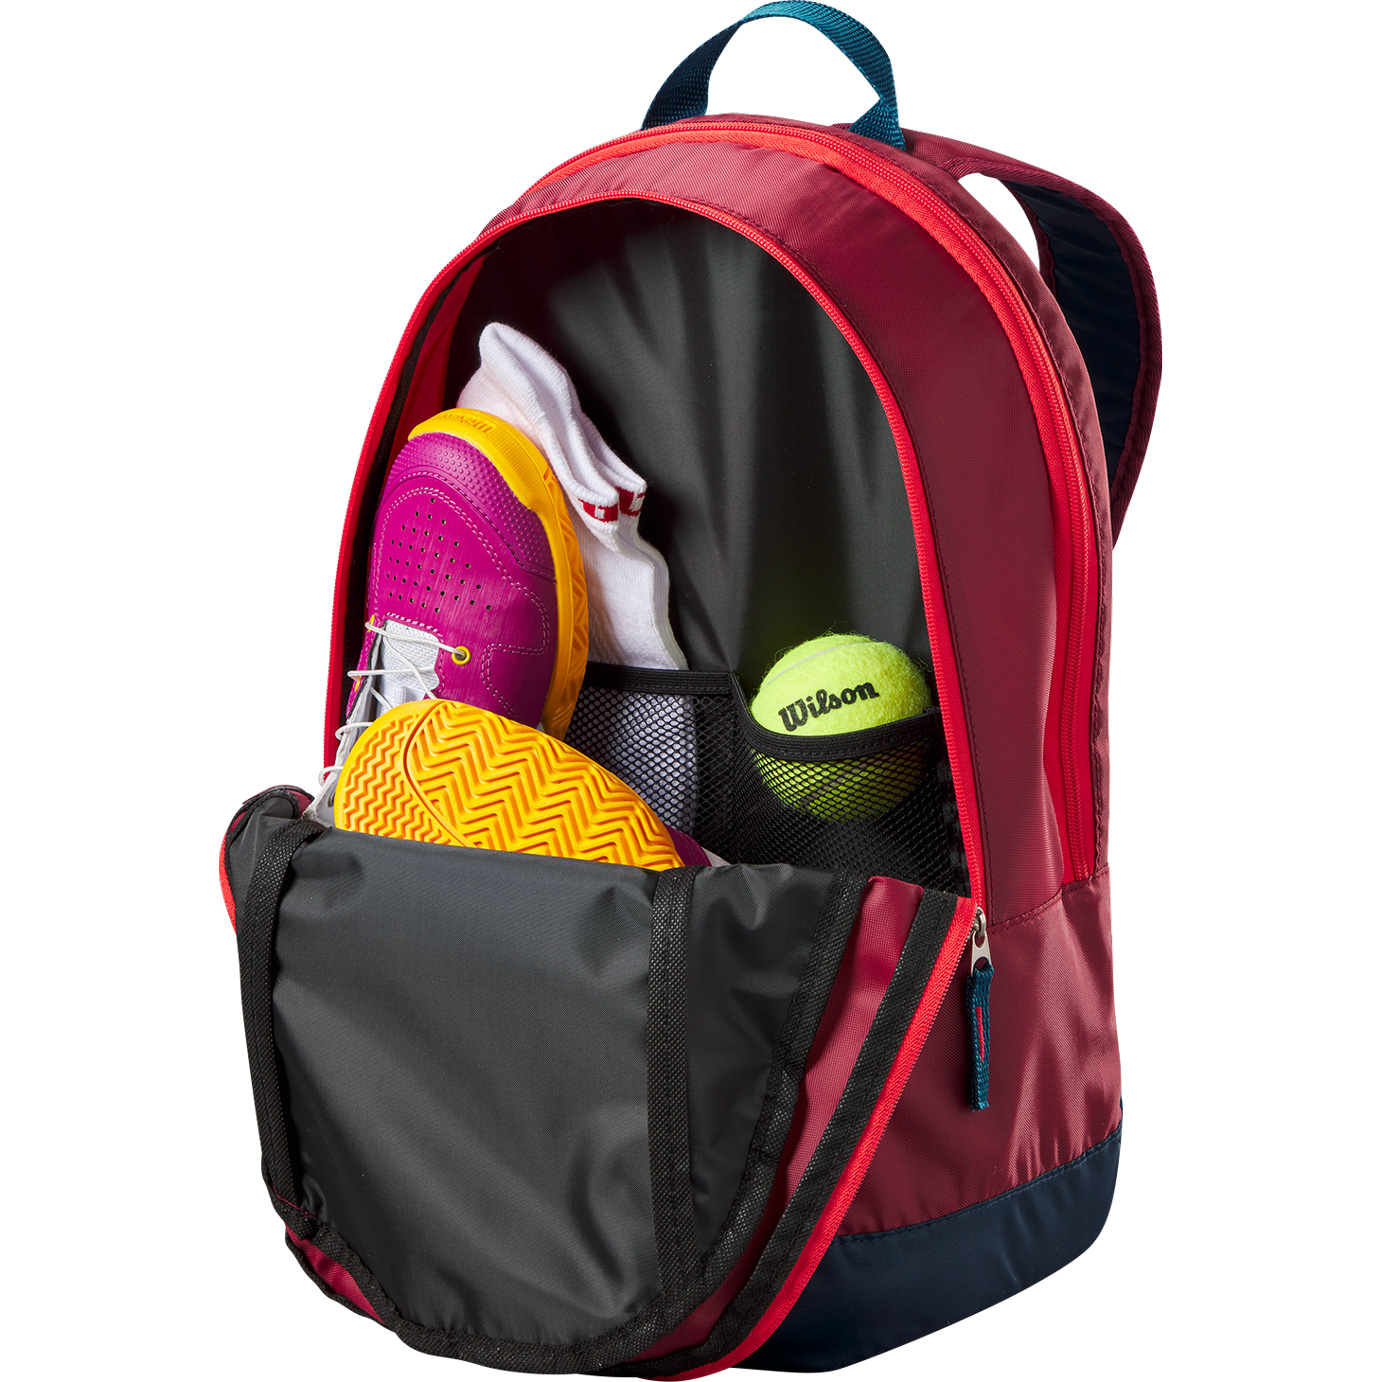 Junior Tennis Backpack Kids red